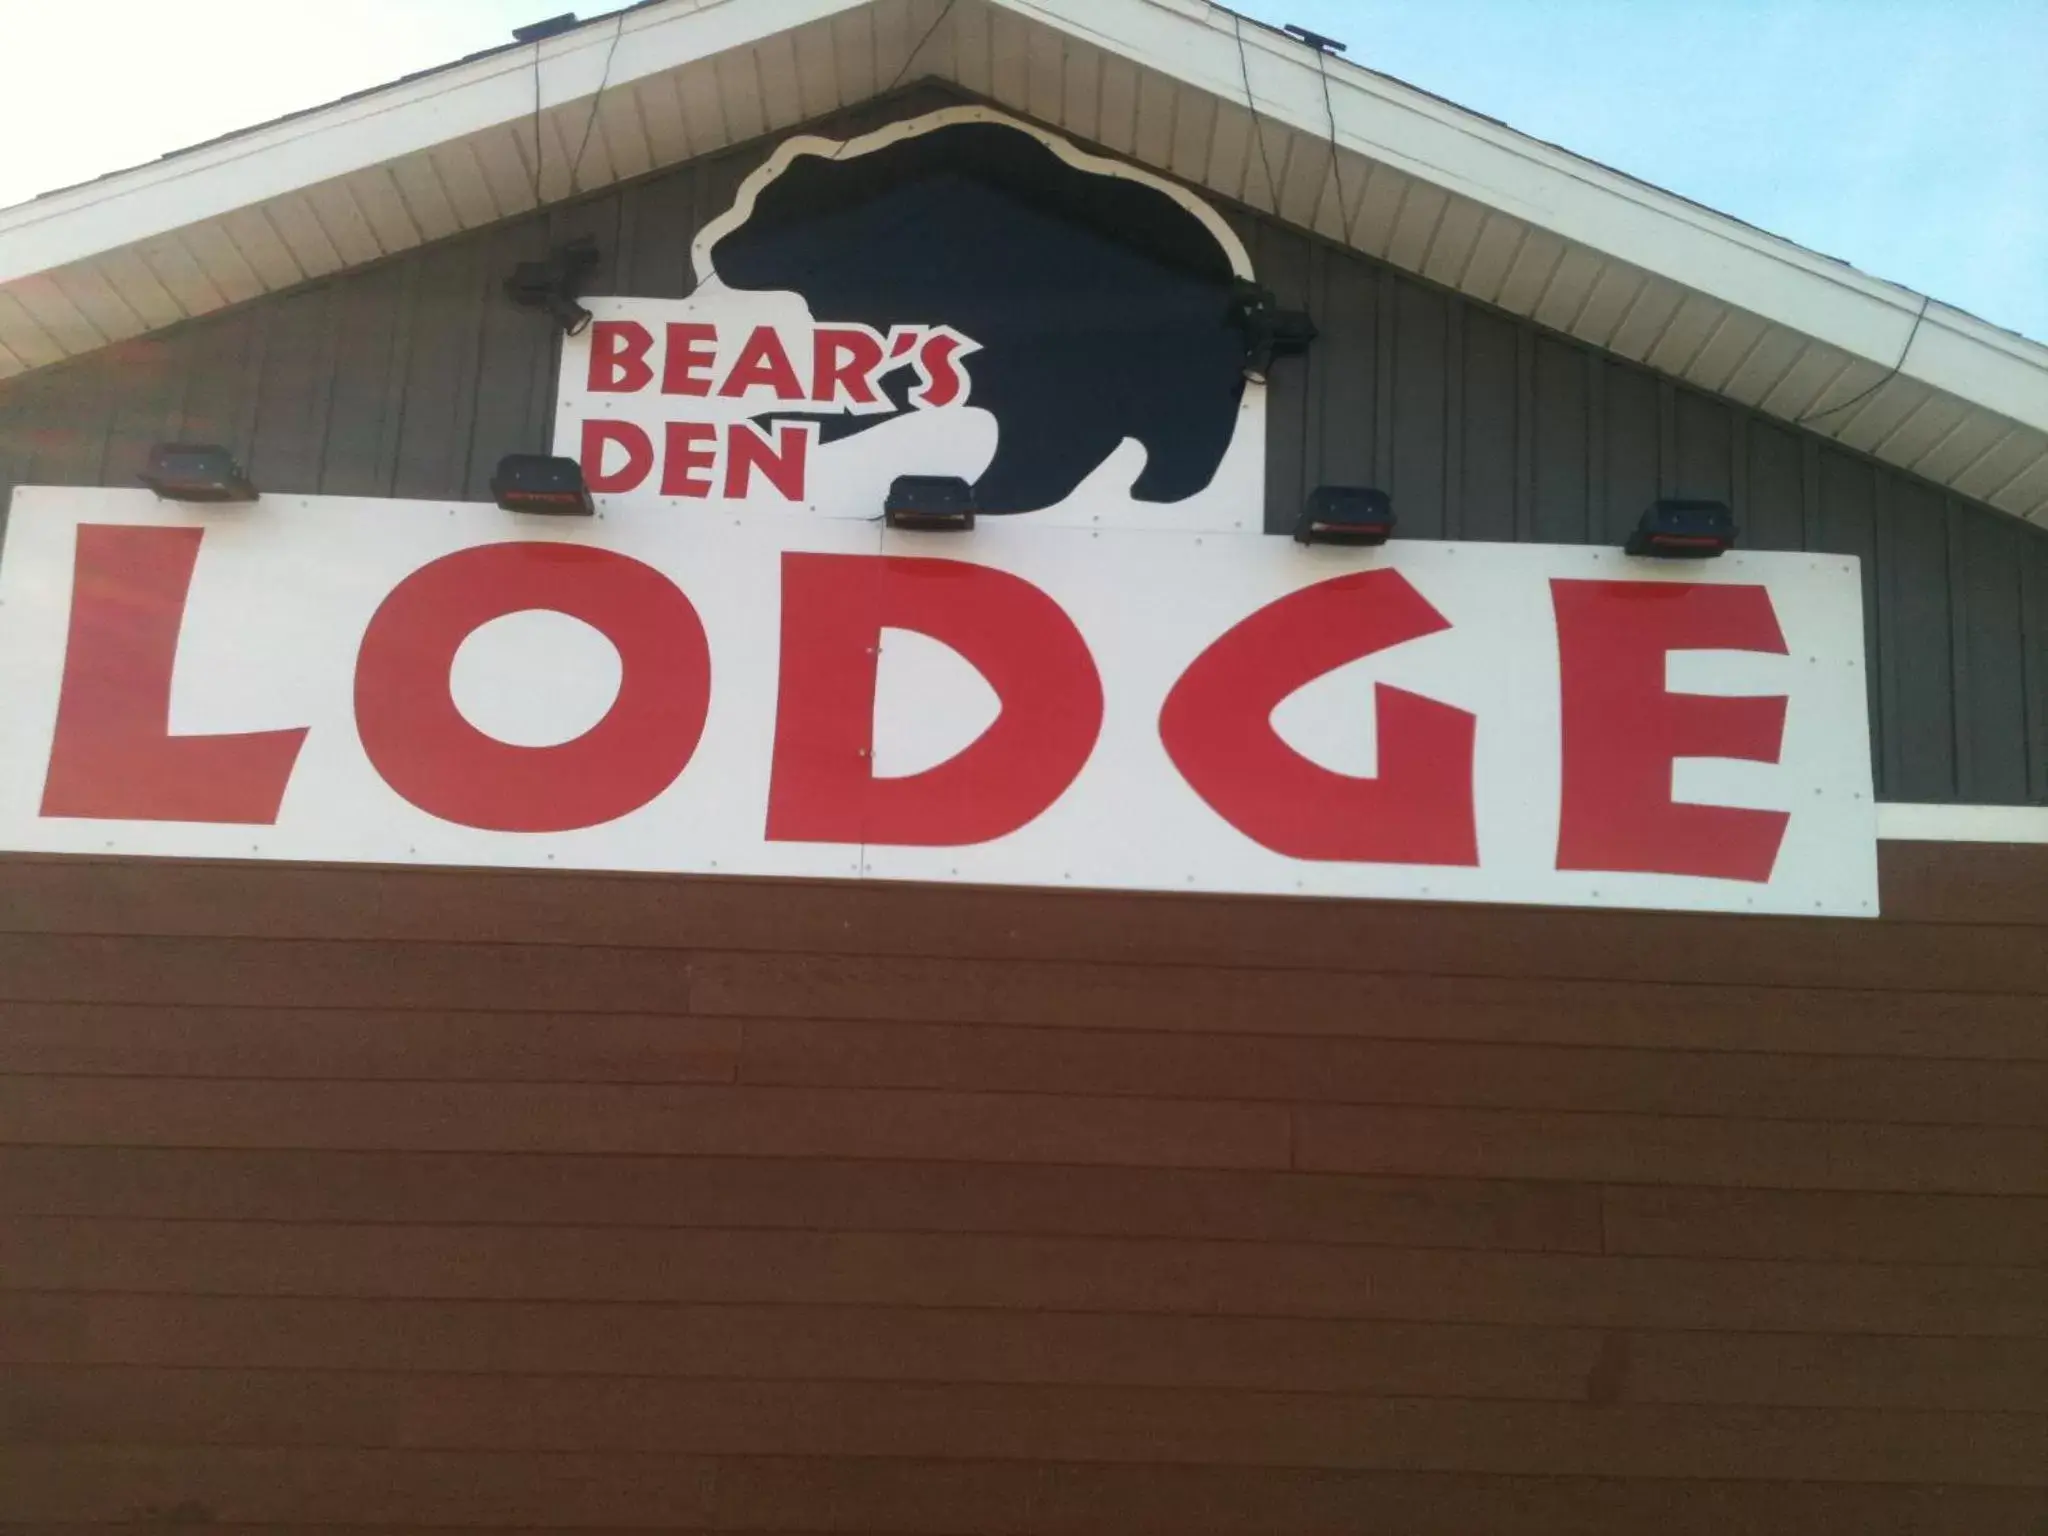 Bear's Den Lodge